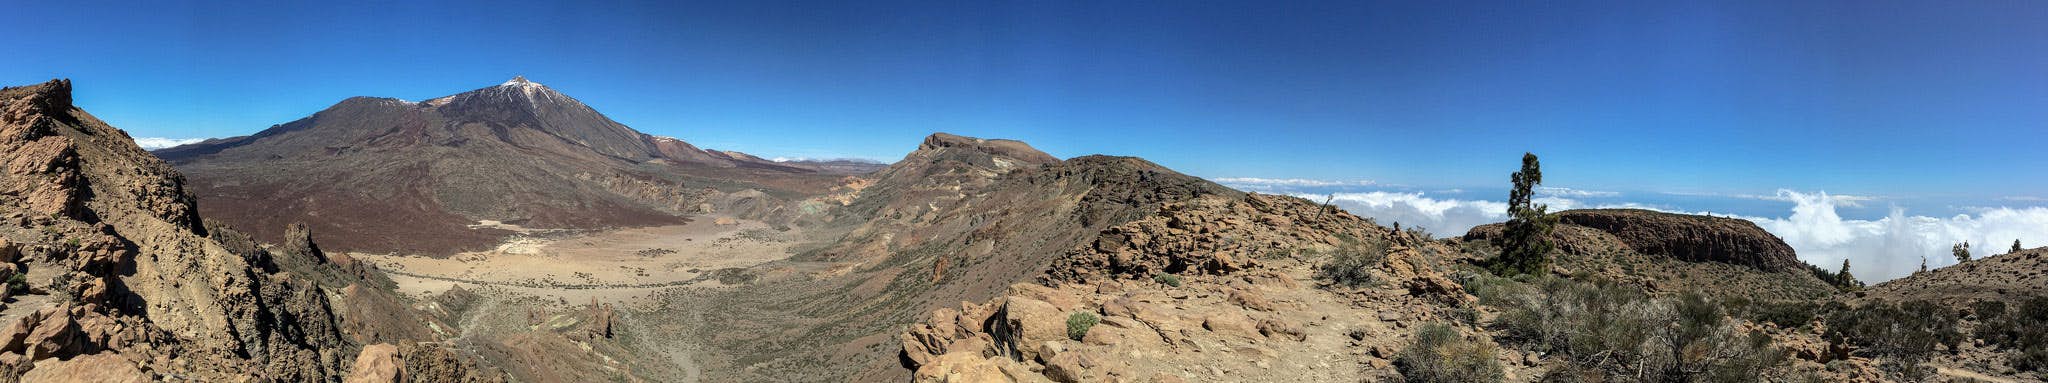 Vista panorámica del Teide, la caldera y las montañas circundantes